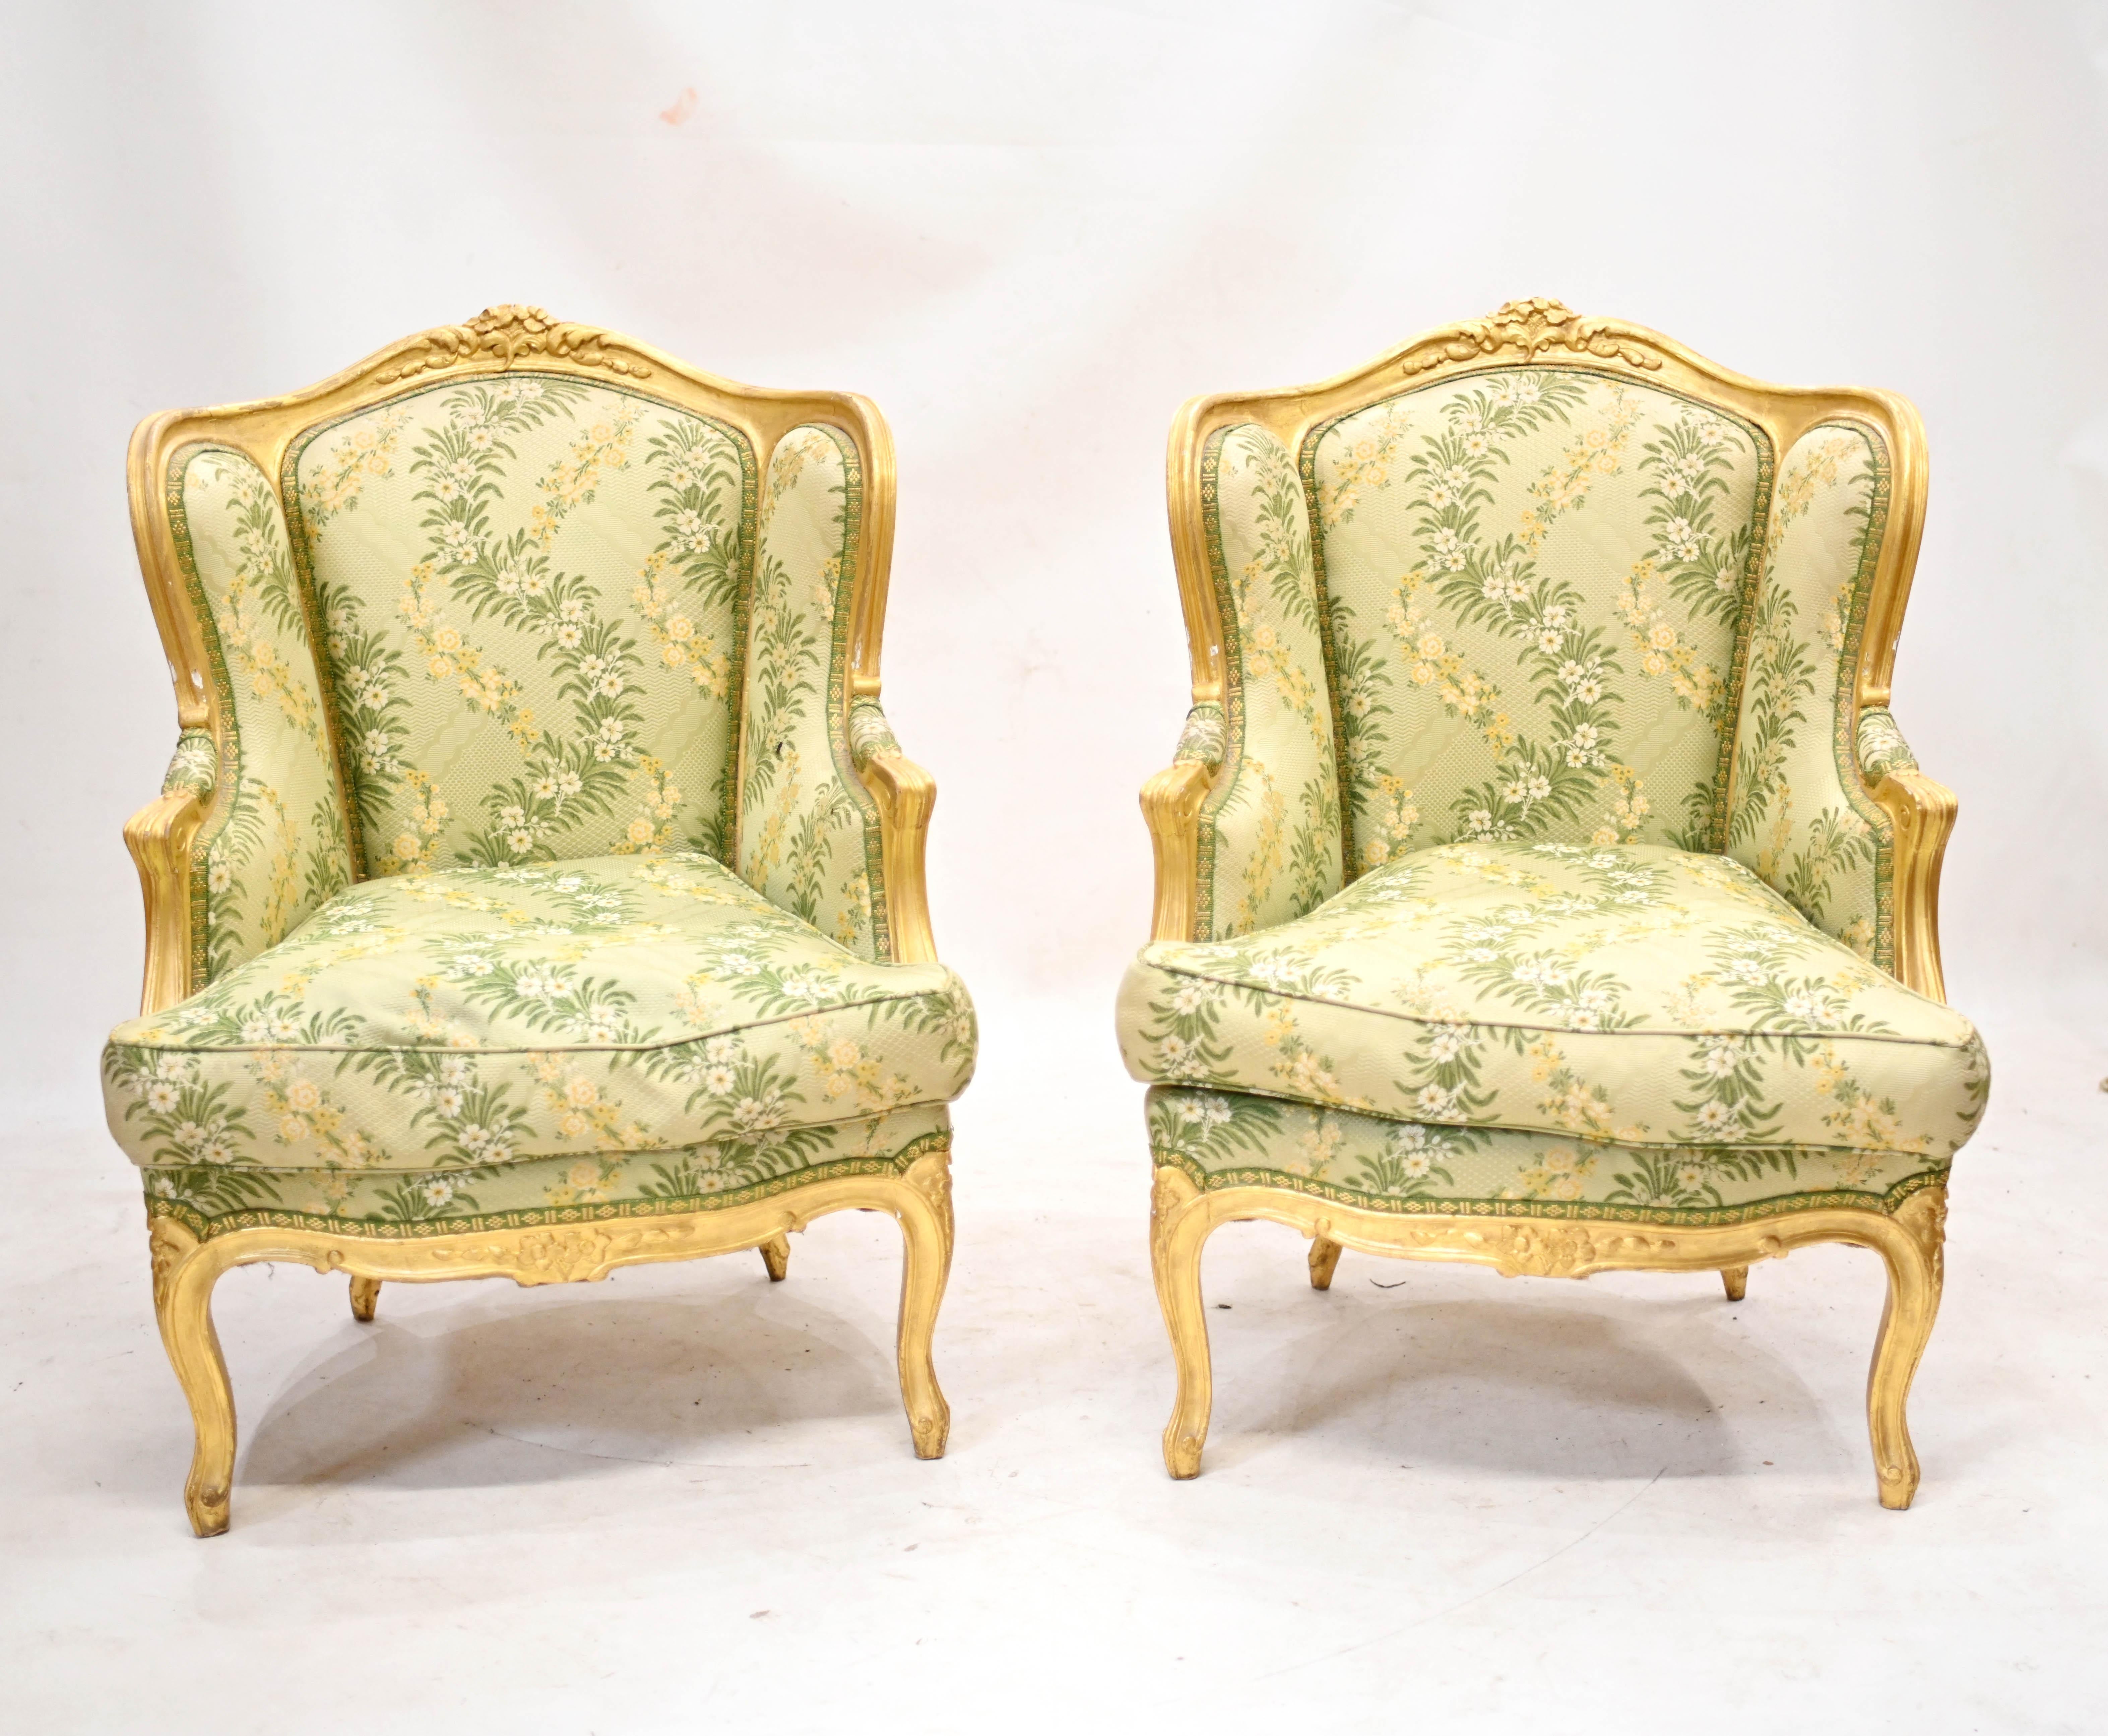 Paire de fauteuils français dorés avec tissu tissé à la main
Paire de fauteuils français de qualité, récemment tapissés d'un décor appliqué à la feuille d'or
Comme il a été tapissé récemment, il est exempt des odeurs des propriétaires précédents